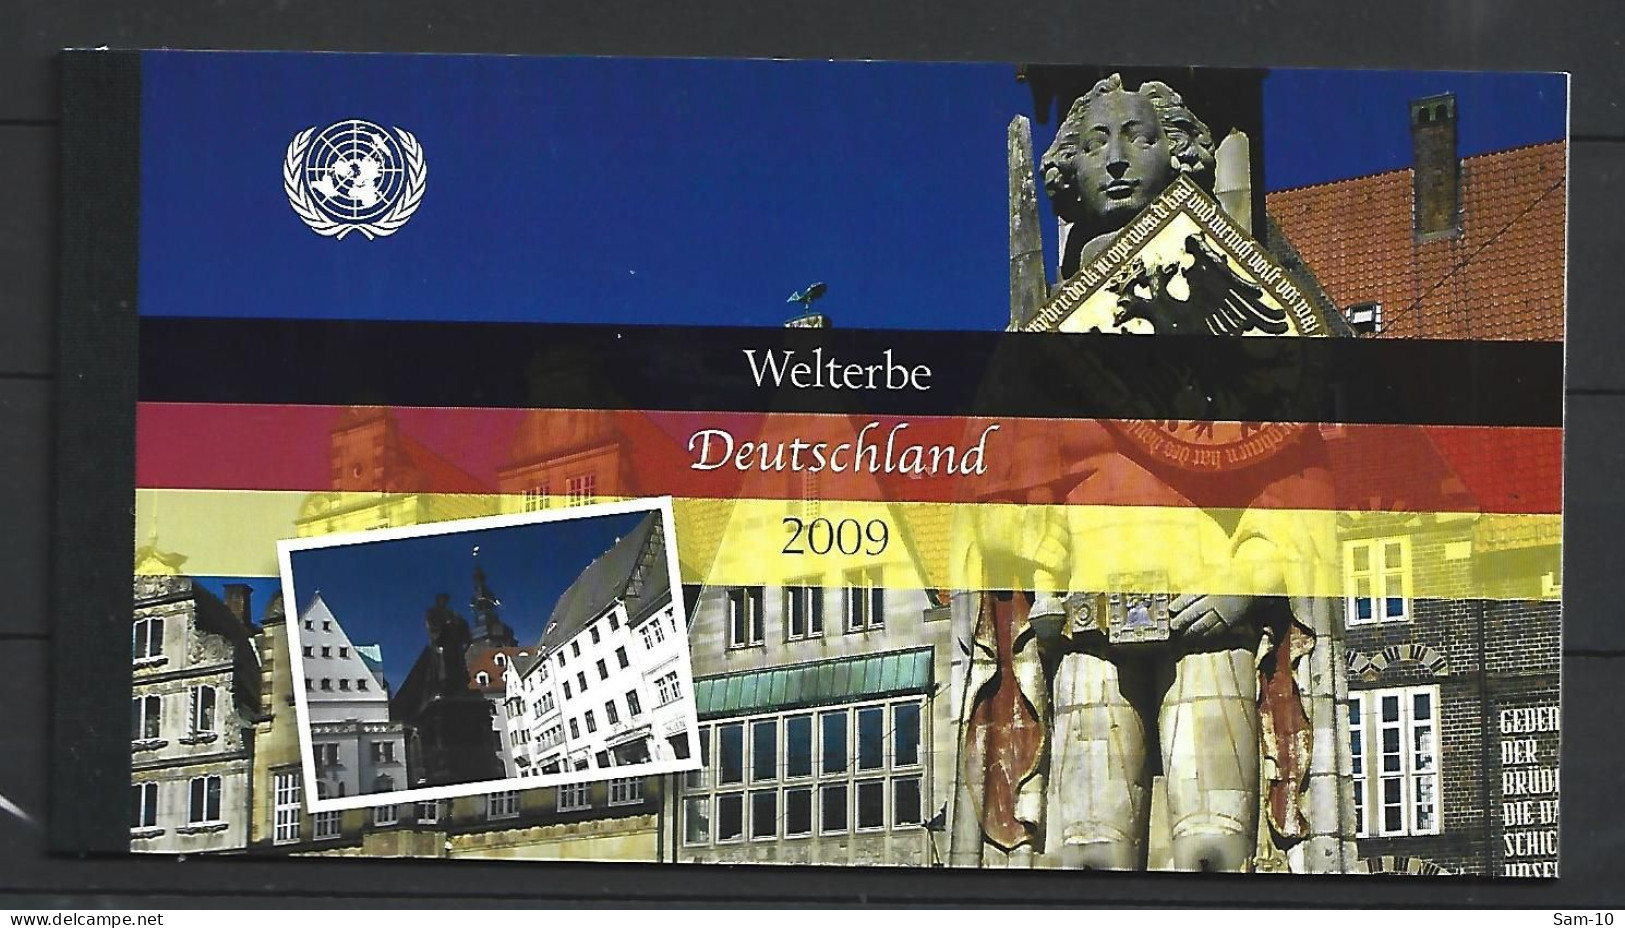 Carnet  Complet   Nation Unies De Vienne Neuf ** N 609  Vendu Au Prix De La Poste - Postzegelboekjes